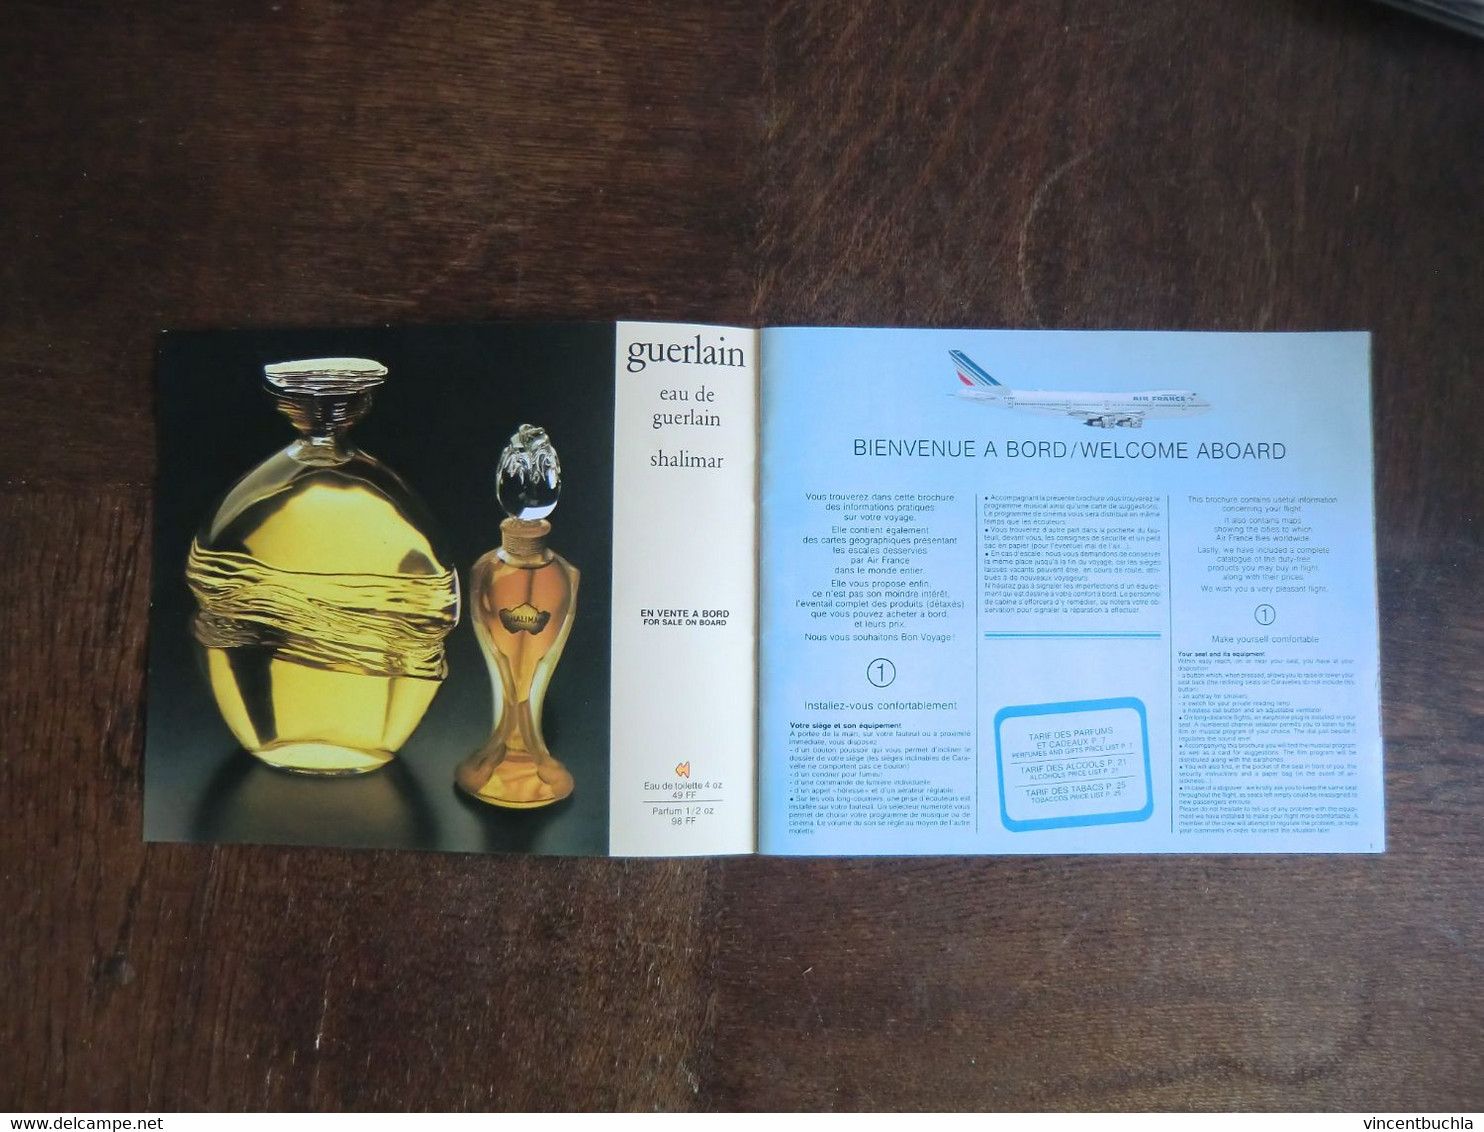 Tarif De Bord Air France "Autour Du Monde" Price List 1978 26 Pages Couleur - Inflight Magazines